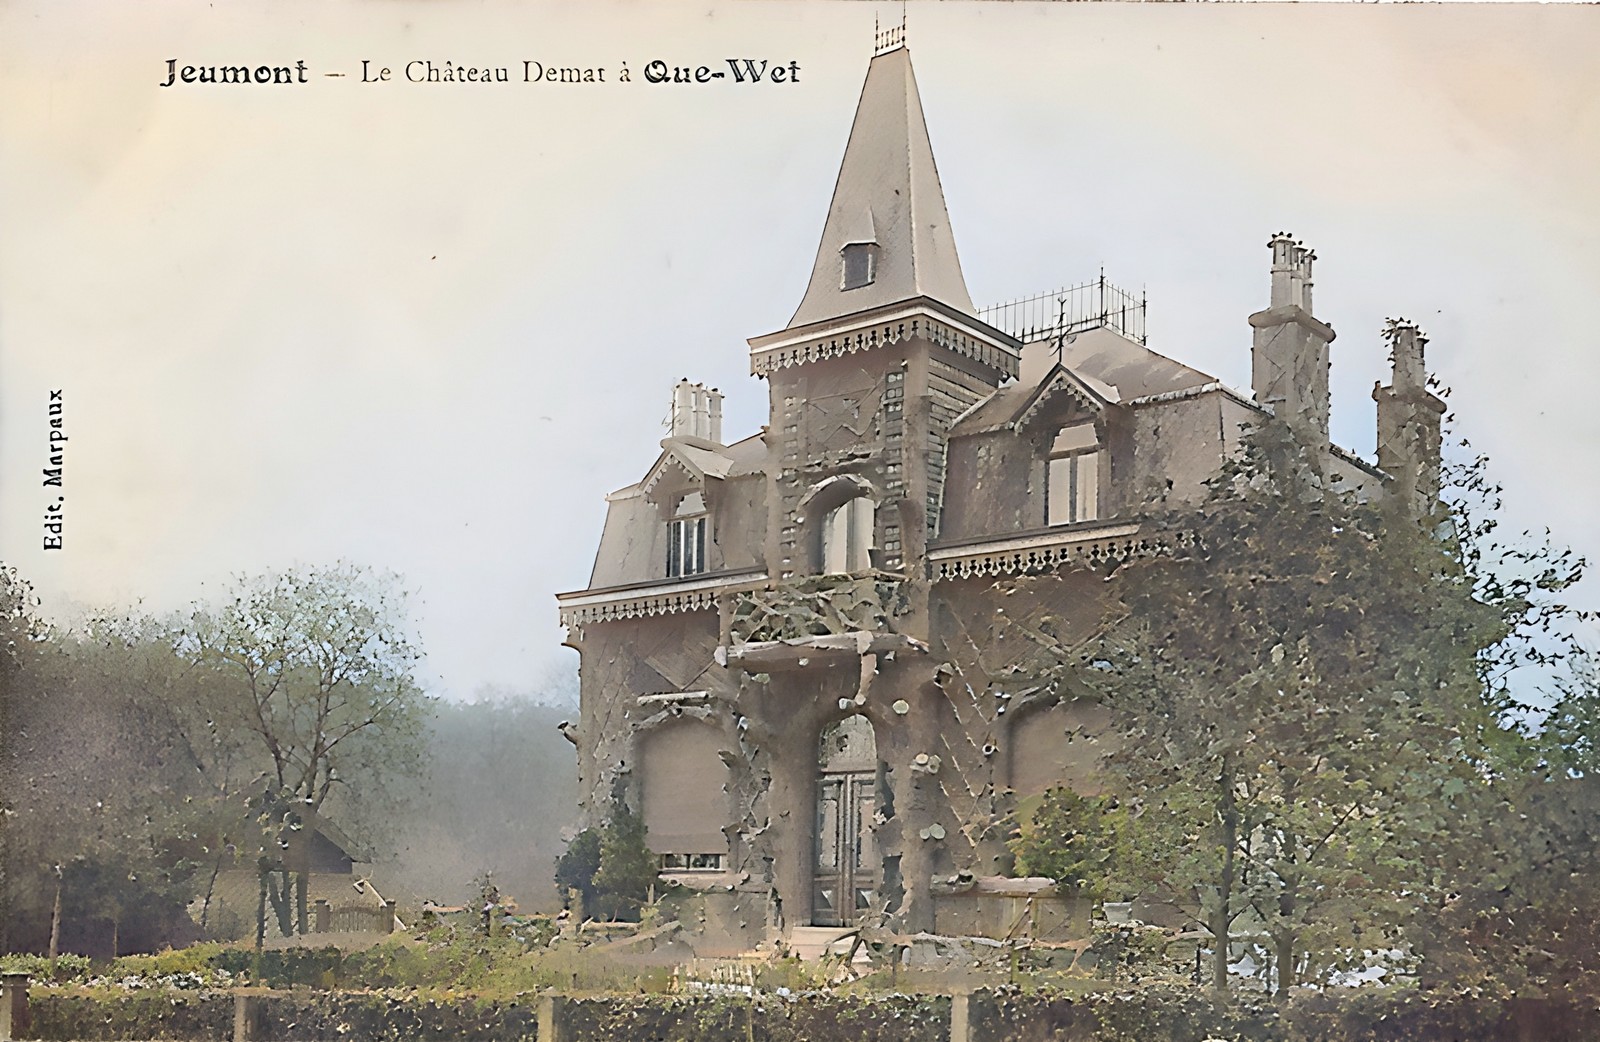 La Maison *Rocaille* (Château Demas, Que-Wet) à Jeumont